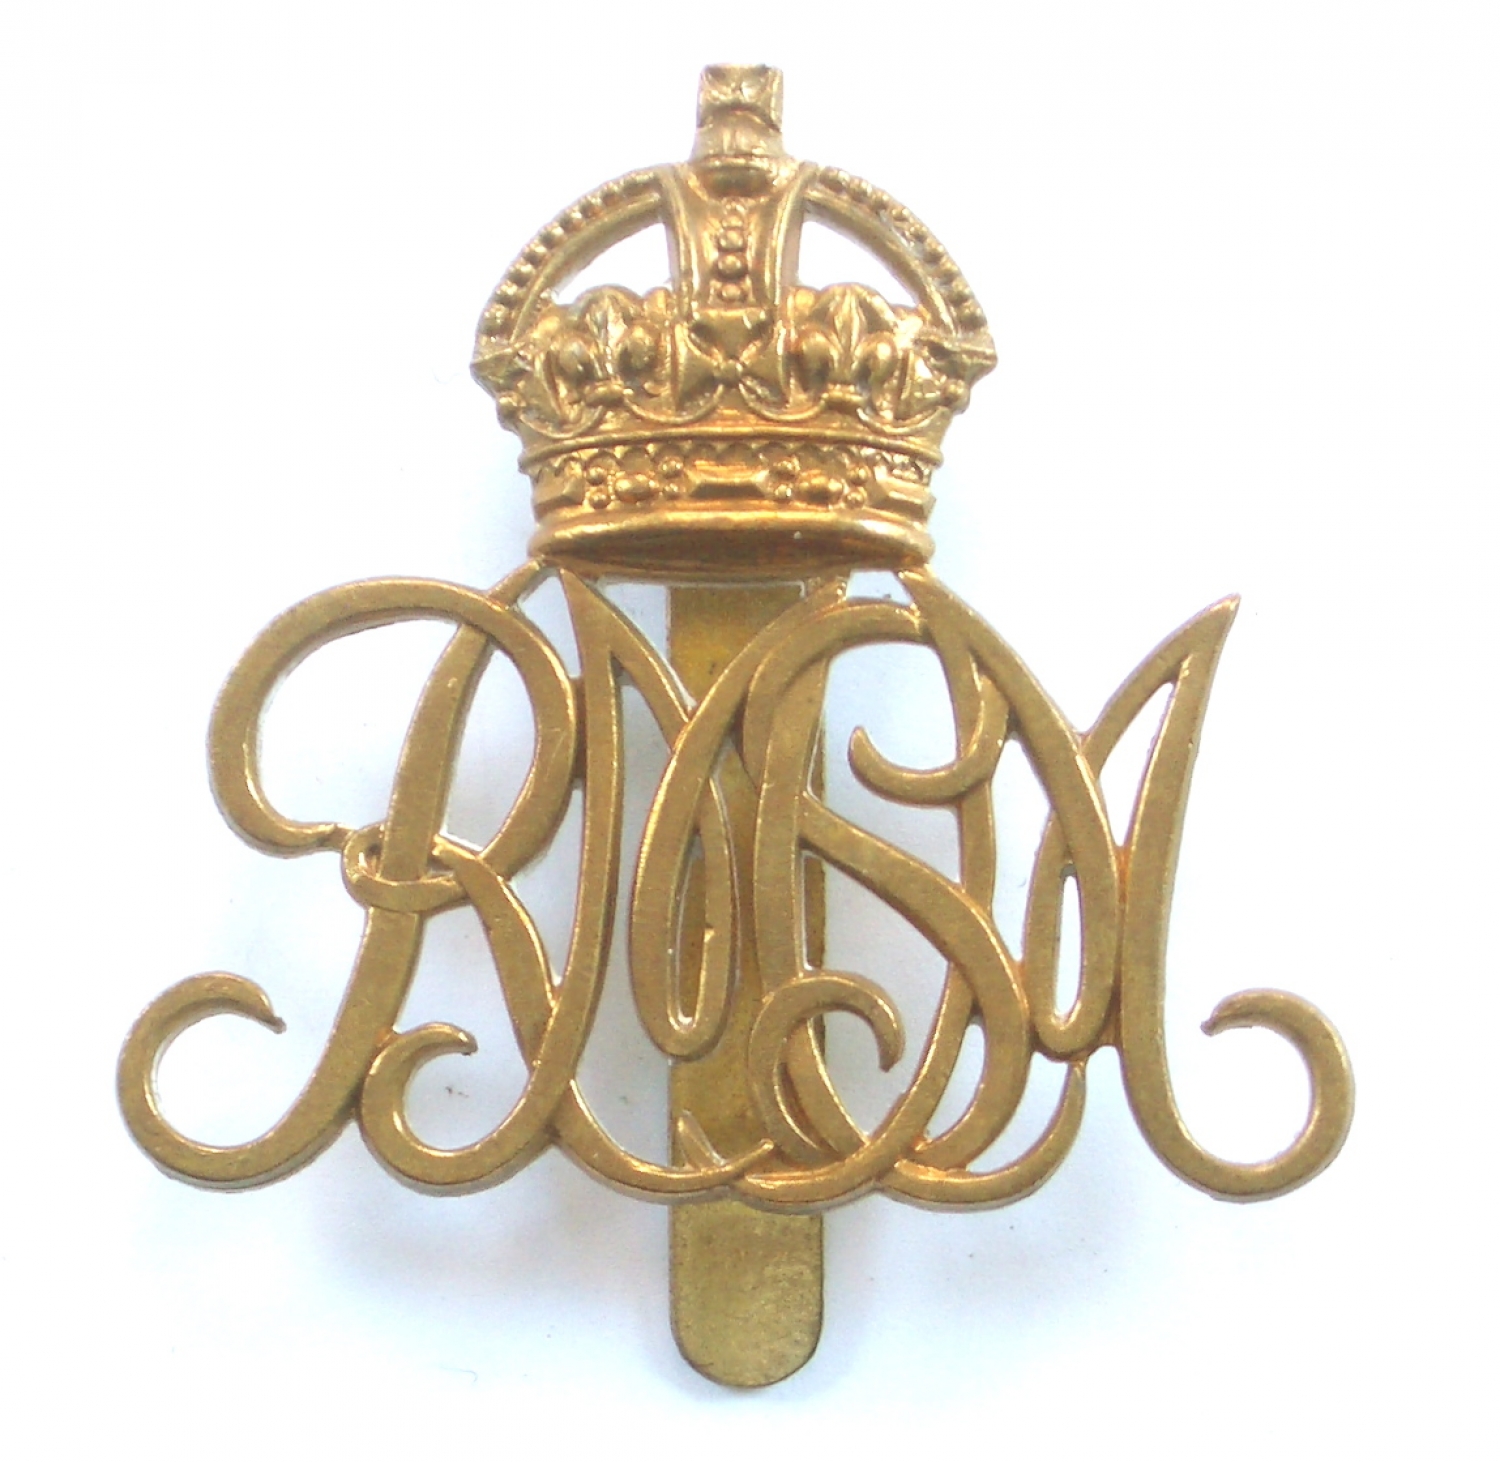 Royal Military School of Music cap badge